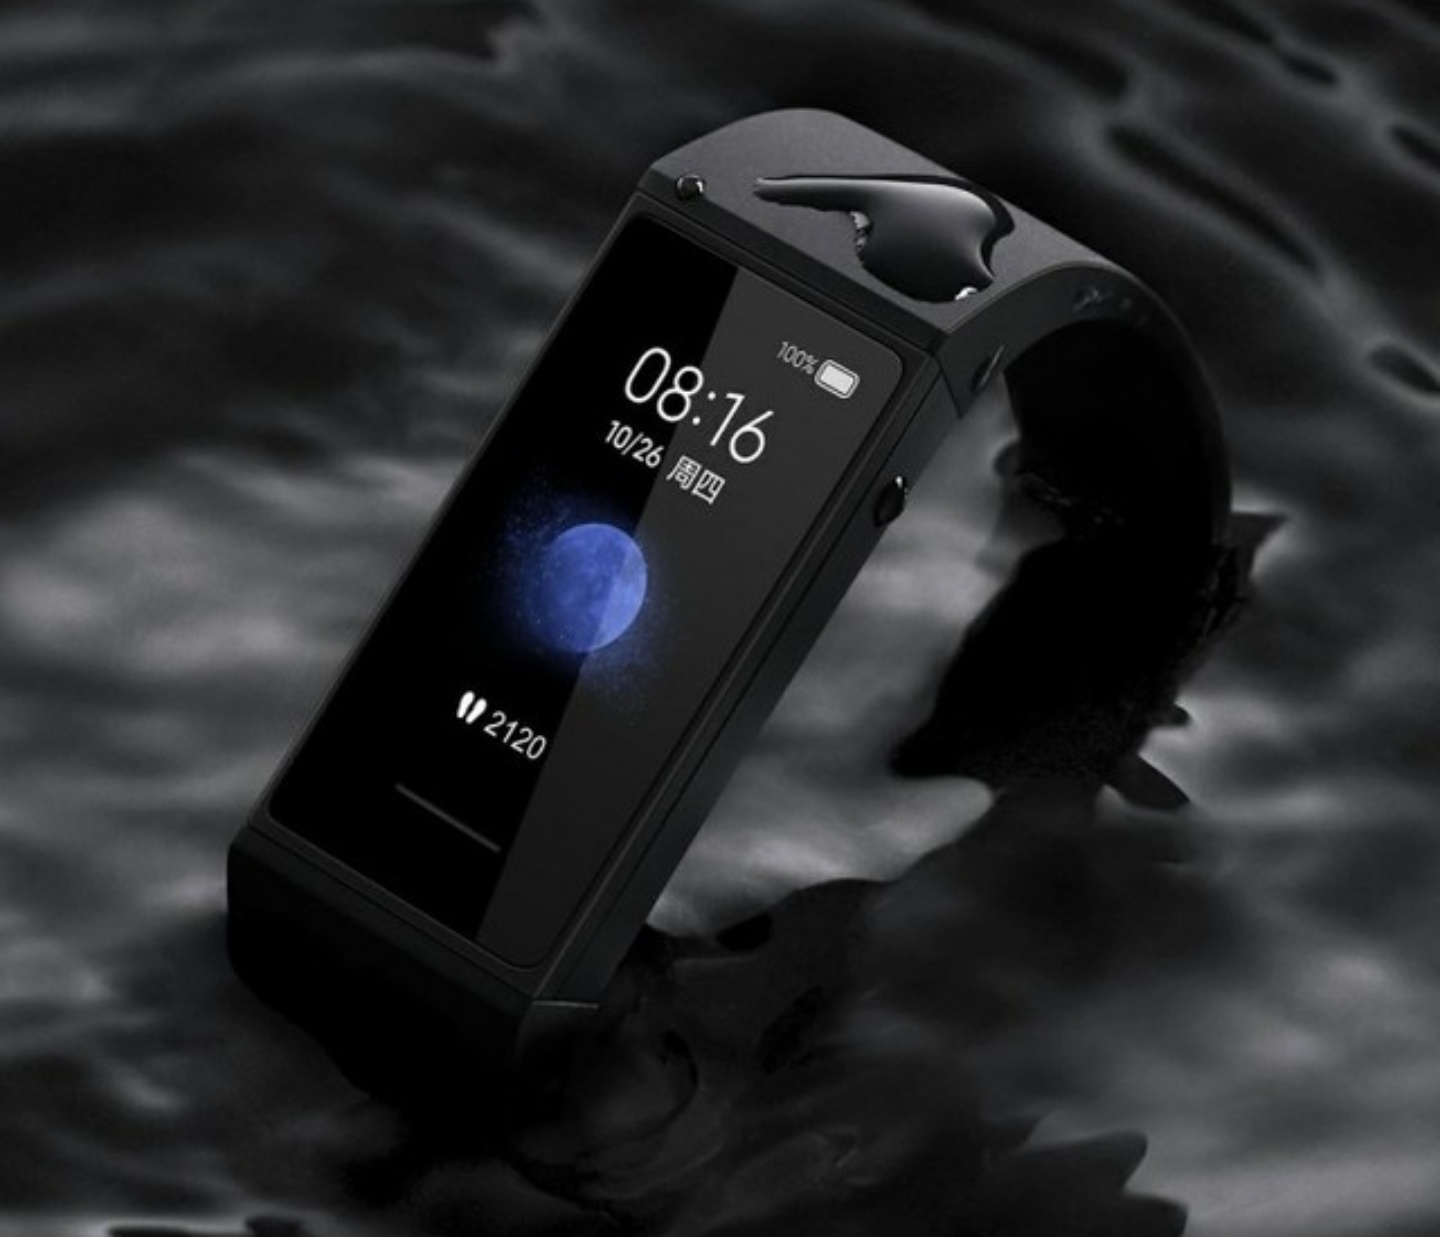 紅米推出首款智慧型穿戴『 Redmi 手環 』！14 天超續航力，防水深度達 50 米！4/9 在中國開賣，售價只要 95 人民幣！